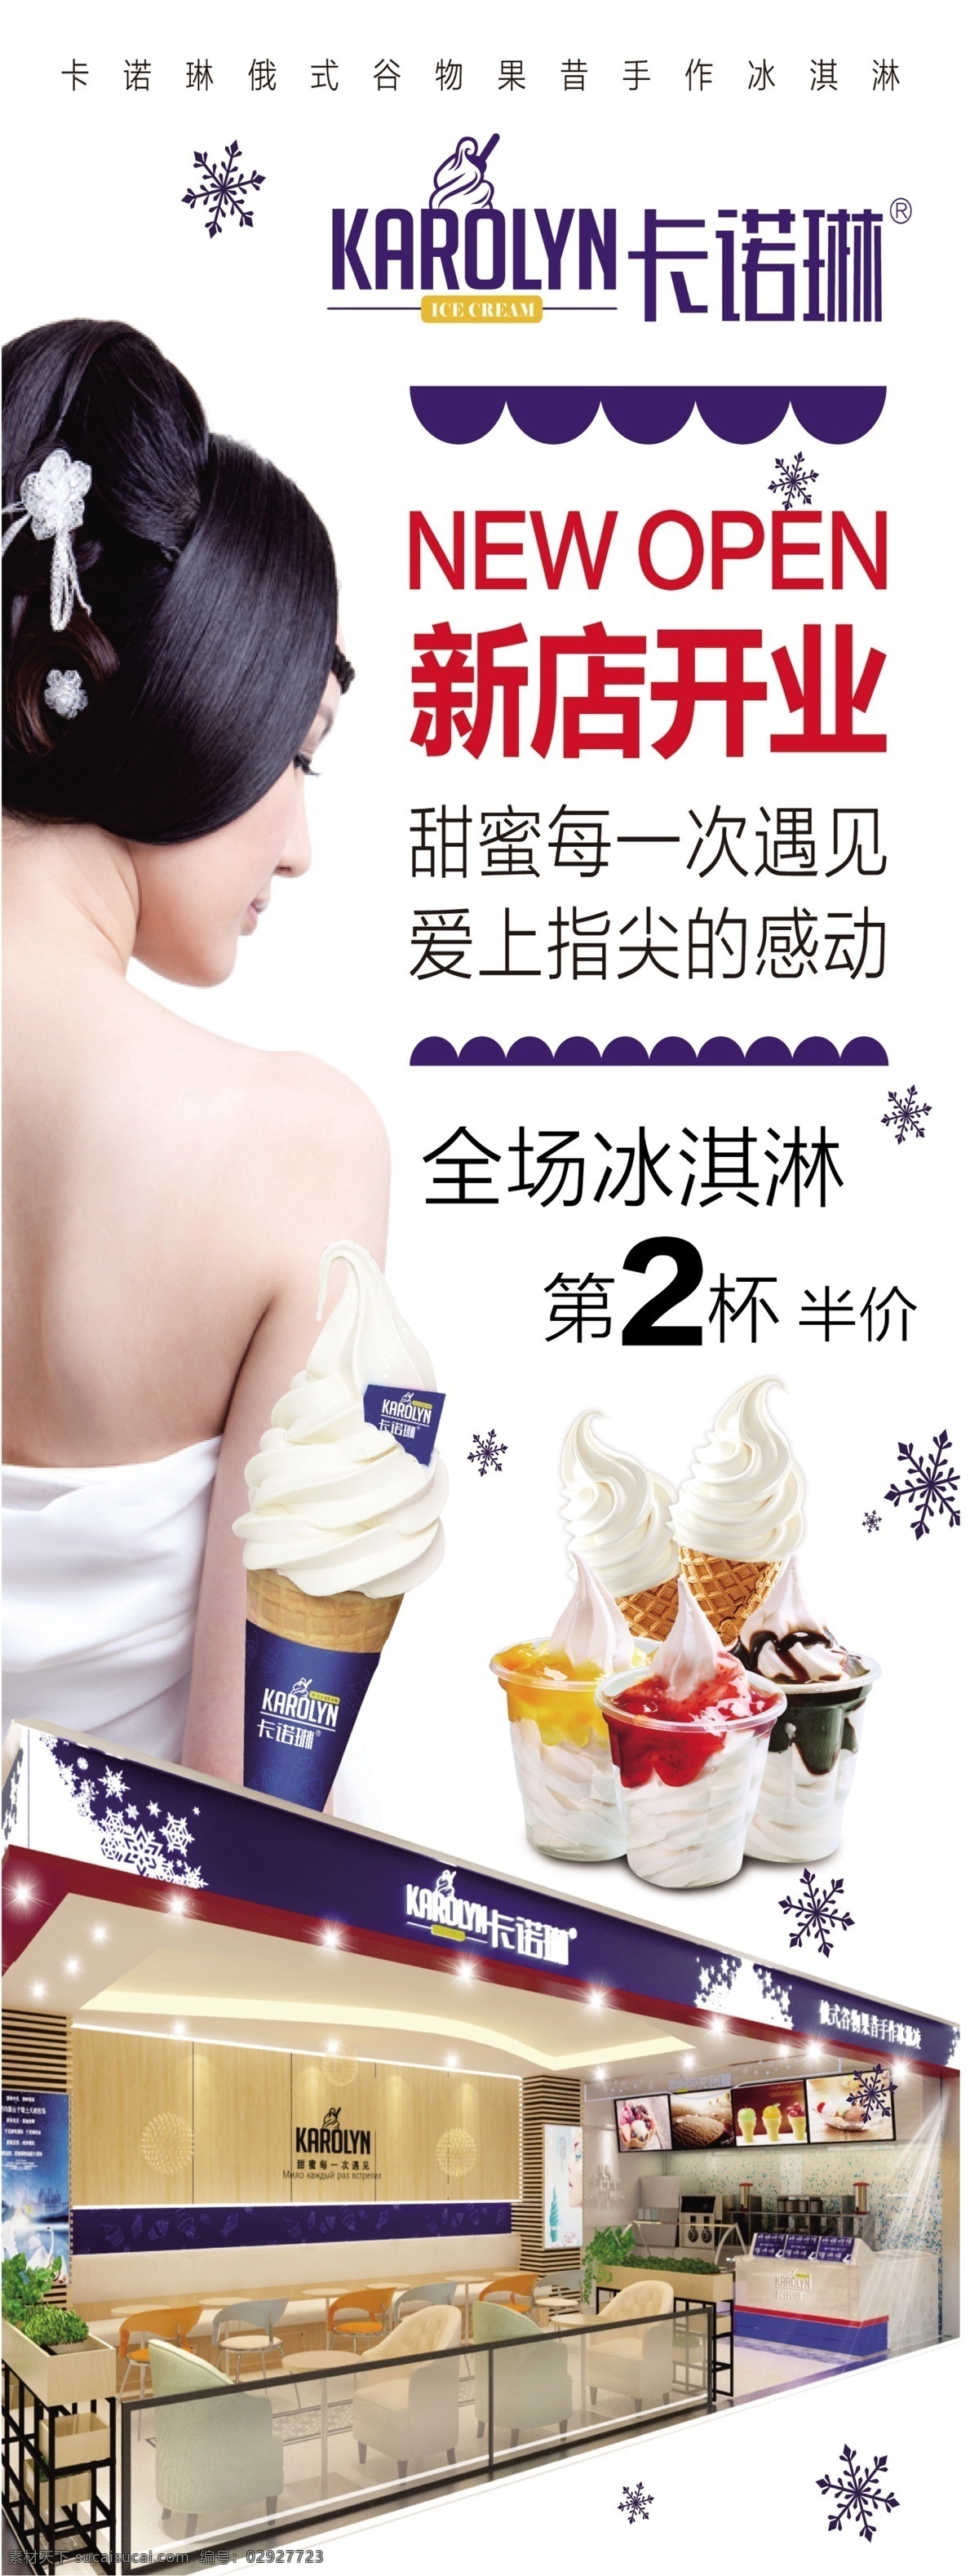 卡诺琳冰淇淋 标志 新店开业 第二杯半价 雪花 冰淇淋